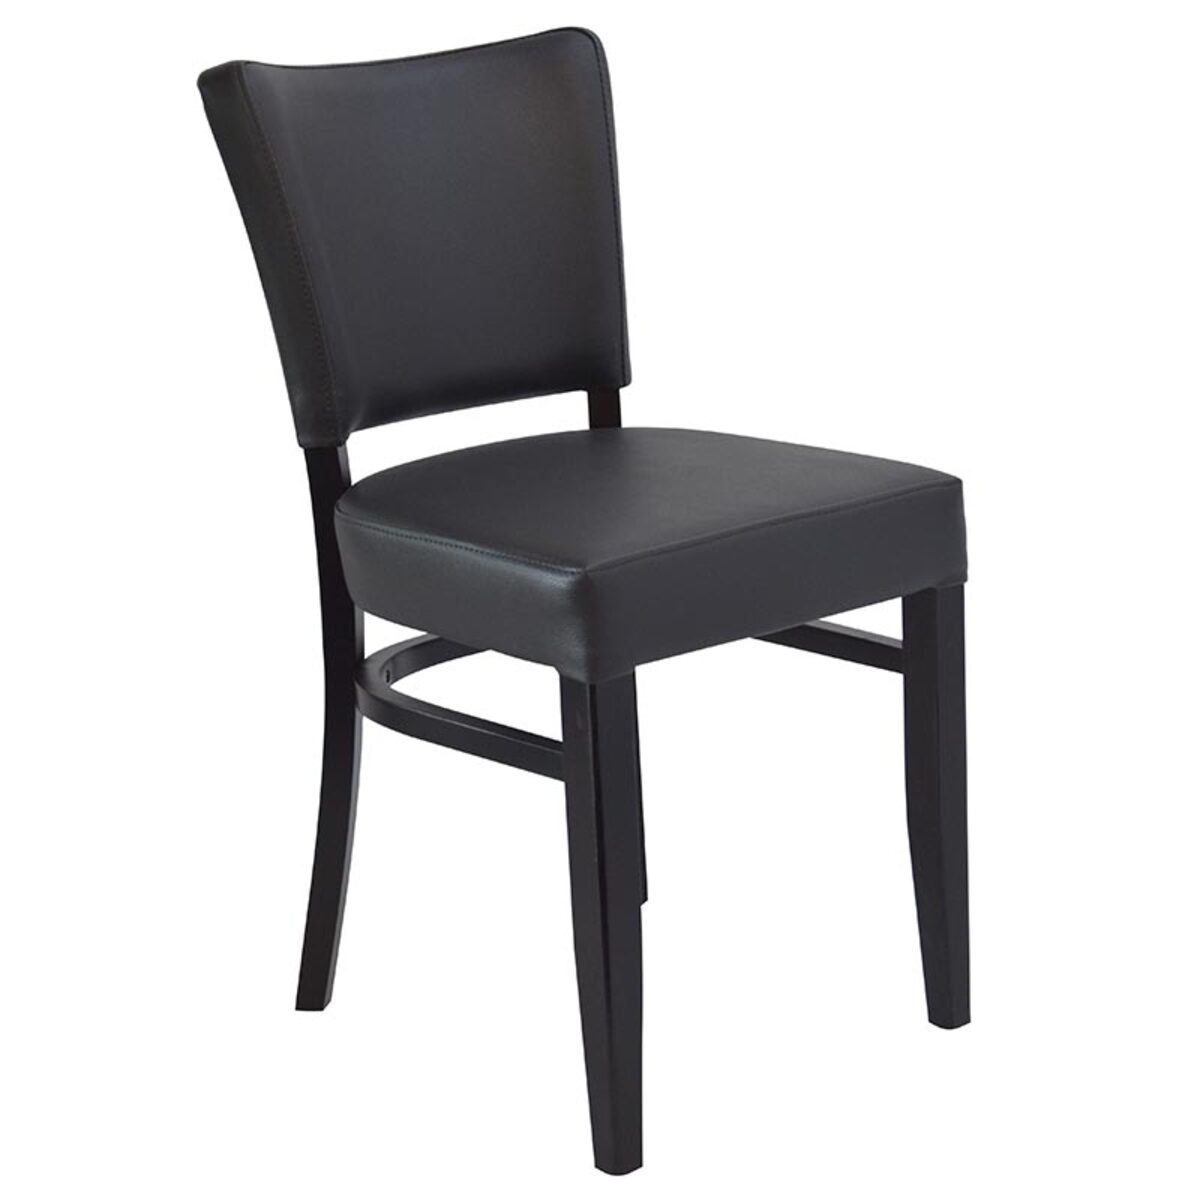 Chaise abigael - coloris noir et anthracite